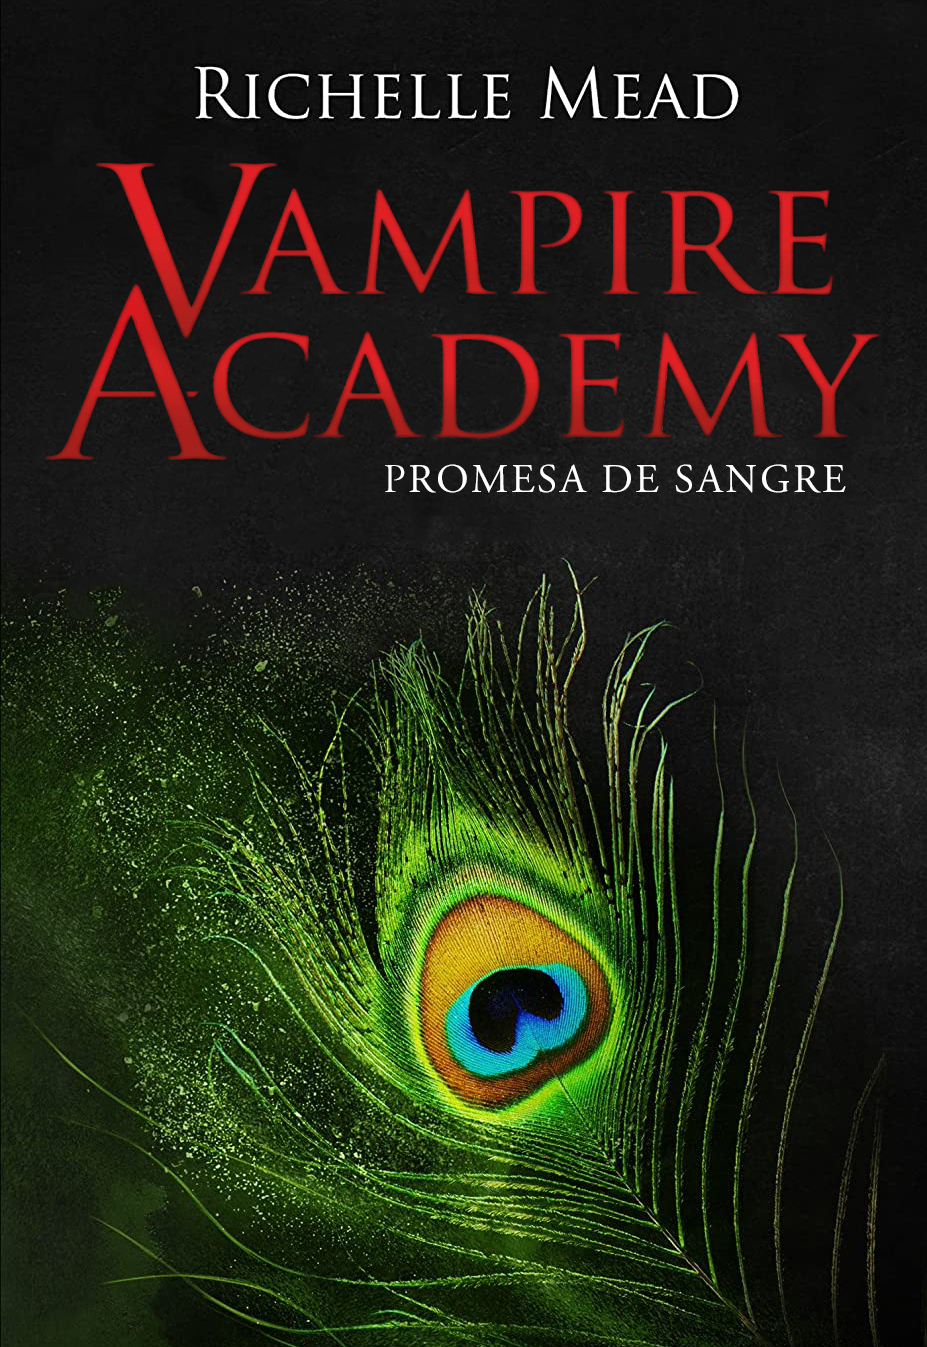 Cien años Pautas Hacer la vida Vampire Academy 4: Promesa de sangre. Vampire Academy, 4 - Editorial Hidra